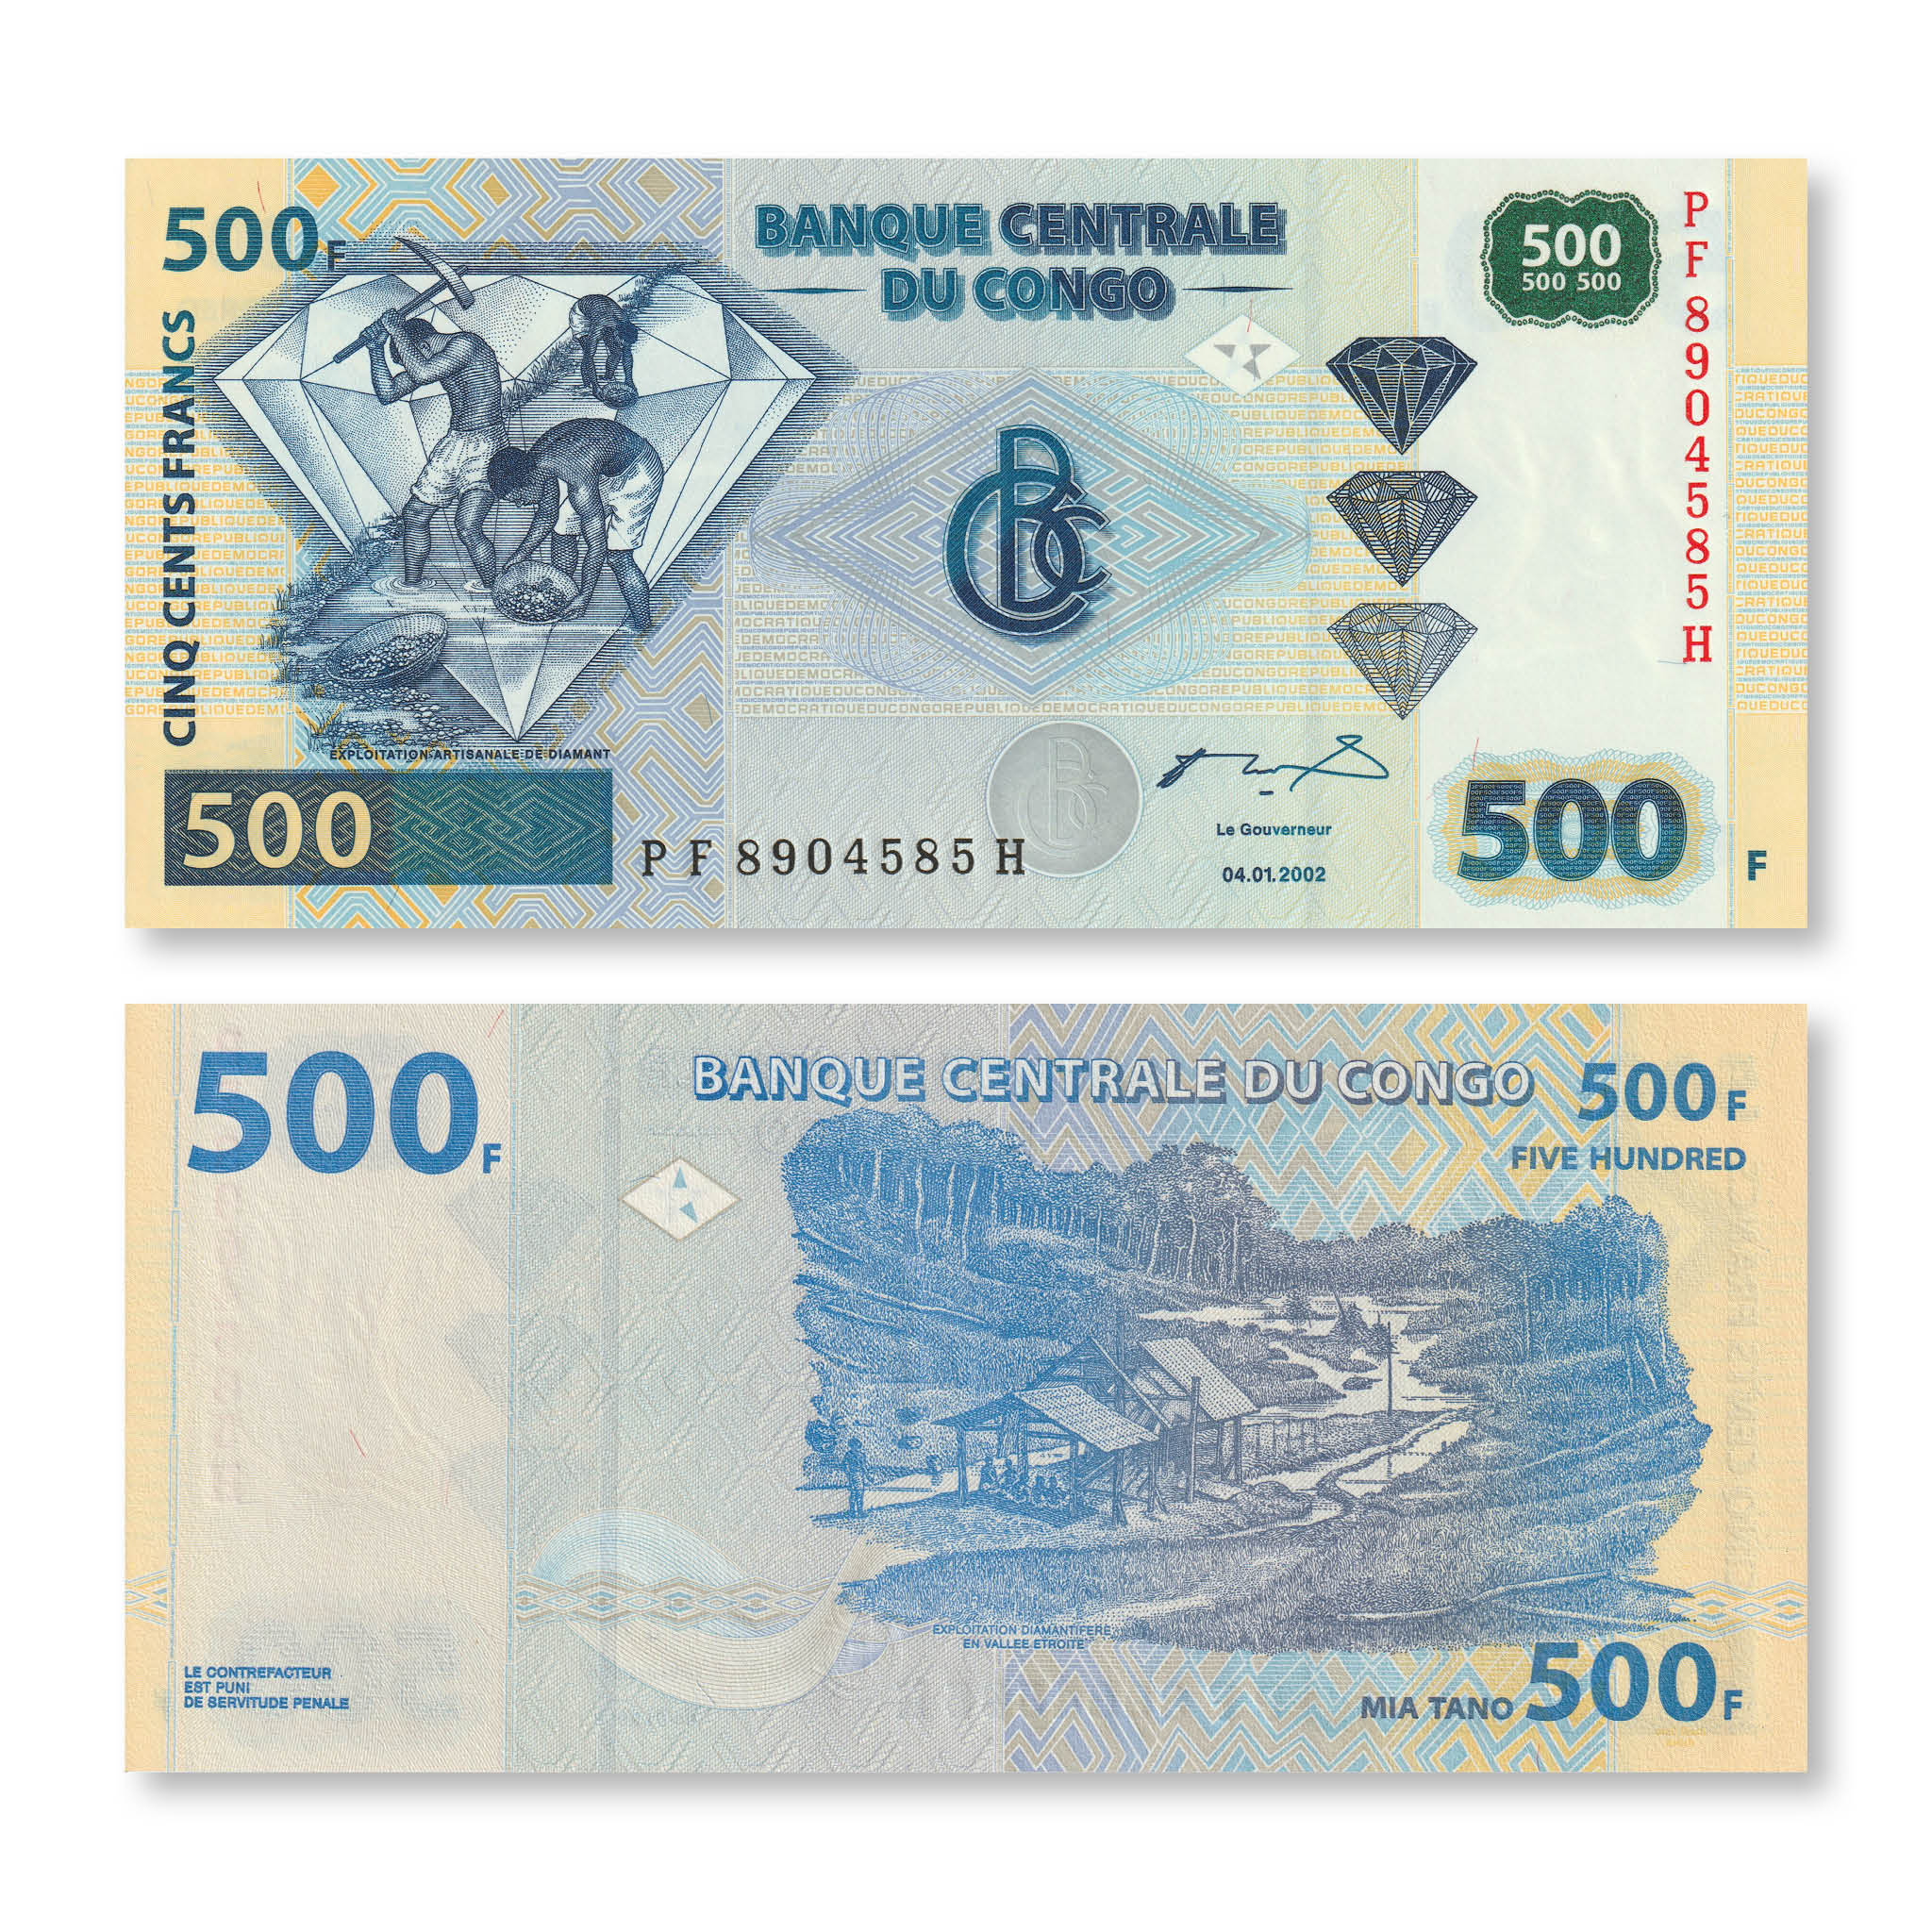 Congo Democratic Republic 500 Francs, 2002, B317c, P96a, UNC - Robert's World Money - World Banknotes